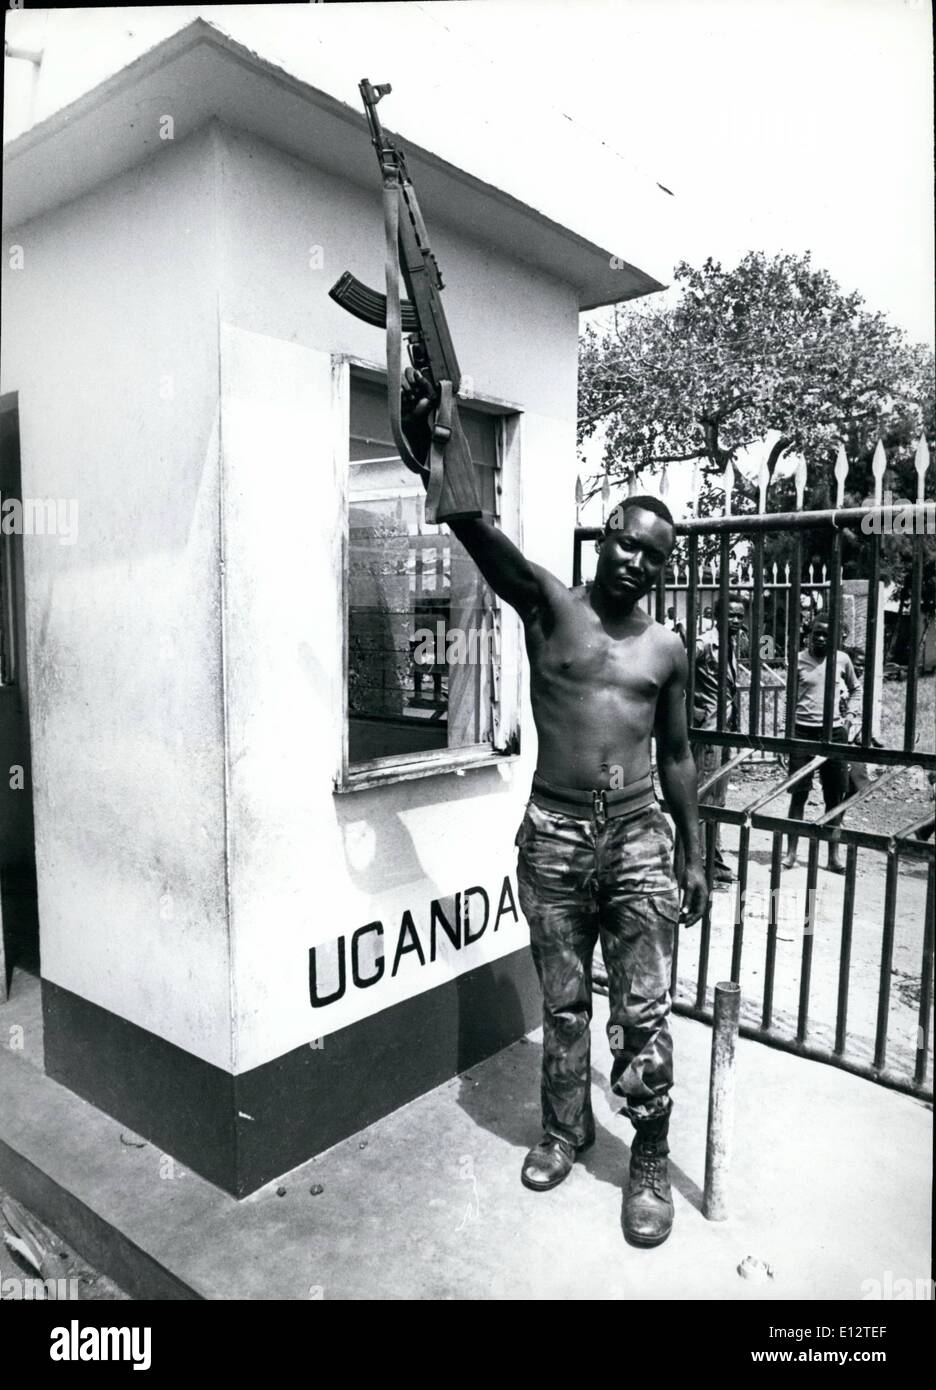 Febbraio 25, 2012 - Busia Uganda. Un soldato della Tanzania onde la sua pistola dopo la cattura del posto di frontiera di Idi Amin, le truppe. Il confine tra Kenya e Uganda è ora aperto. Foto Stock